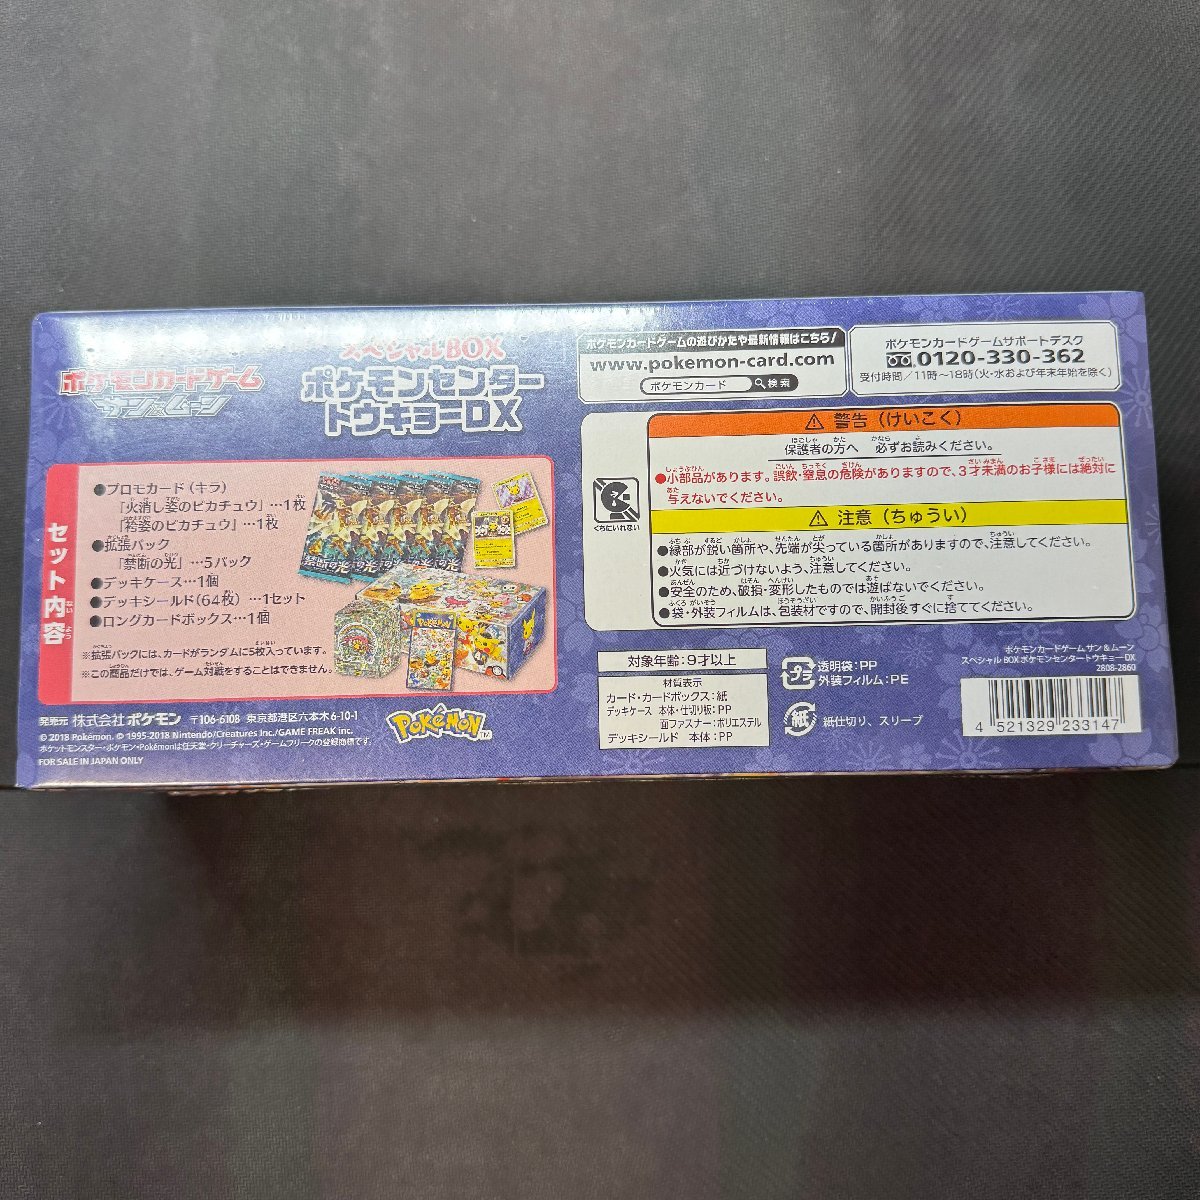 スペシャルBOX ポケモンセンタートウキョーDX 未開封 シュリンク付き BOX 袴姿のピカチュウ ポケカ Japanese Pokemon Card_画像6